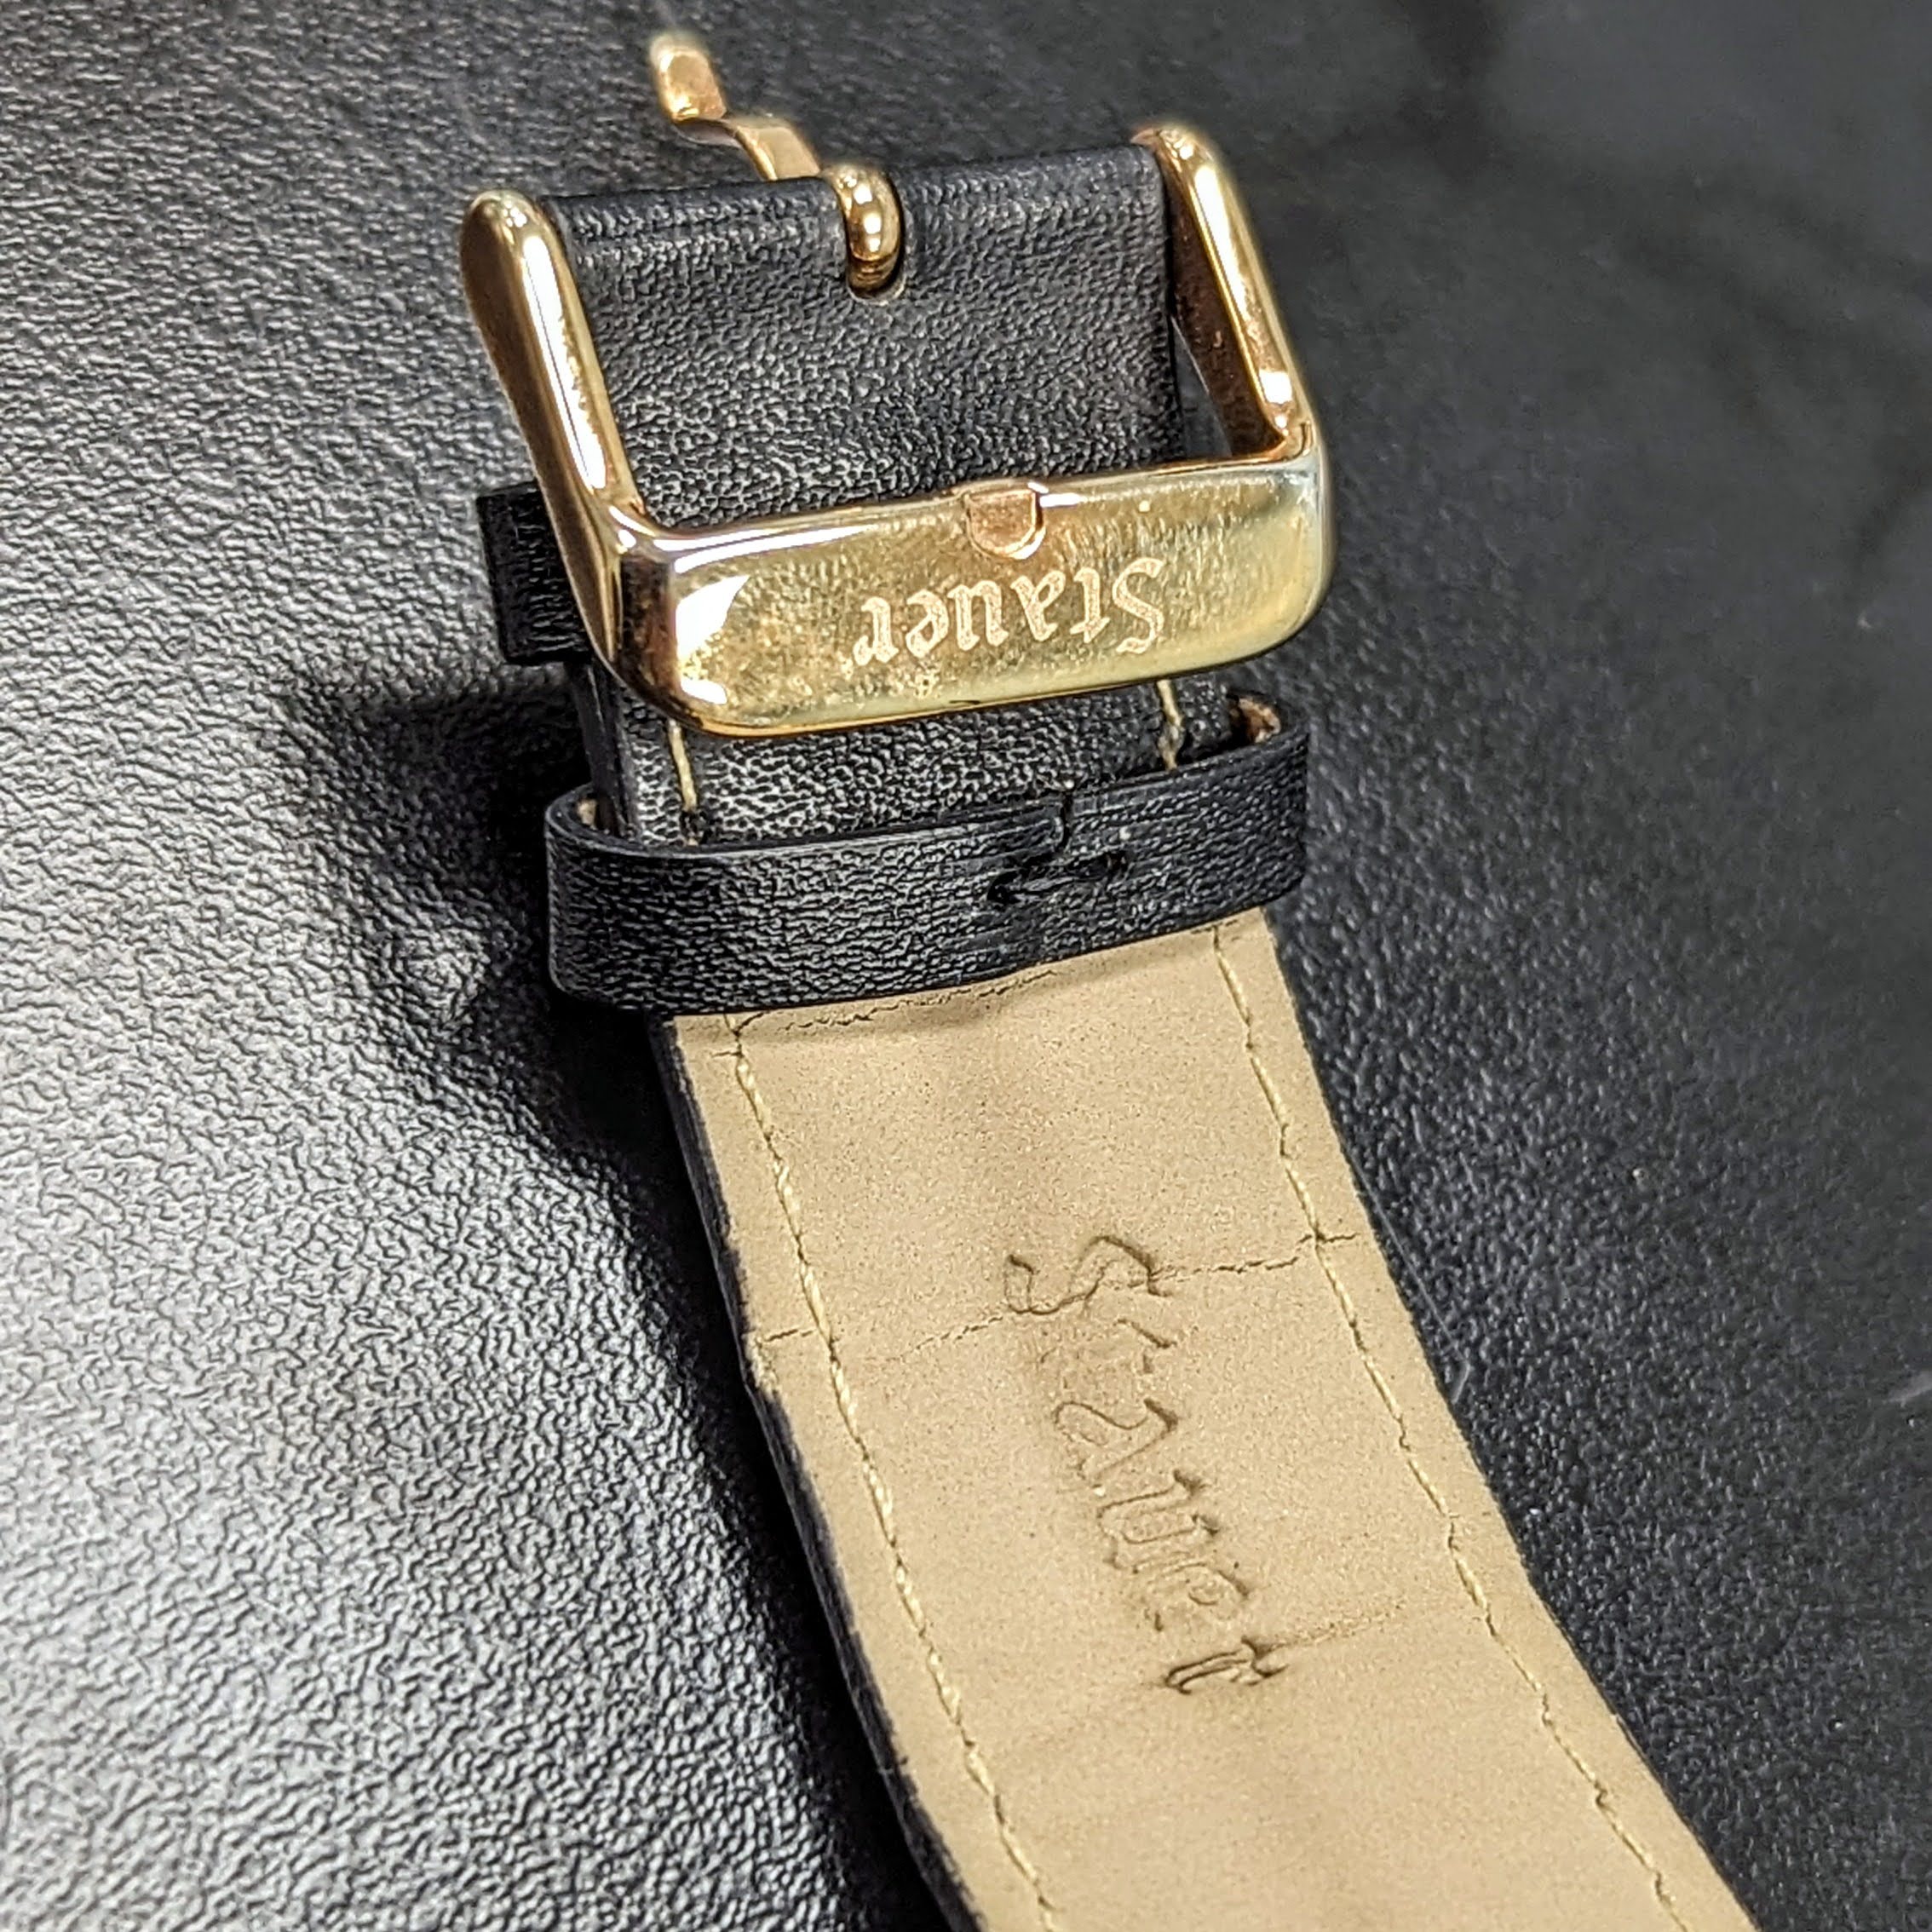 STAUER Buttonwood 42mm Quartz Watch Ref. 22671 3 ATM Waterresistant Wristwatch